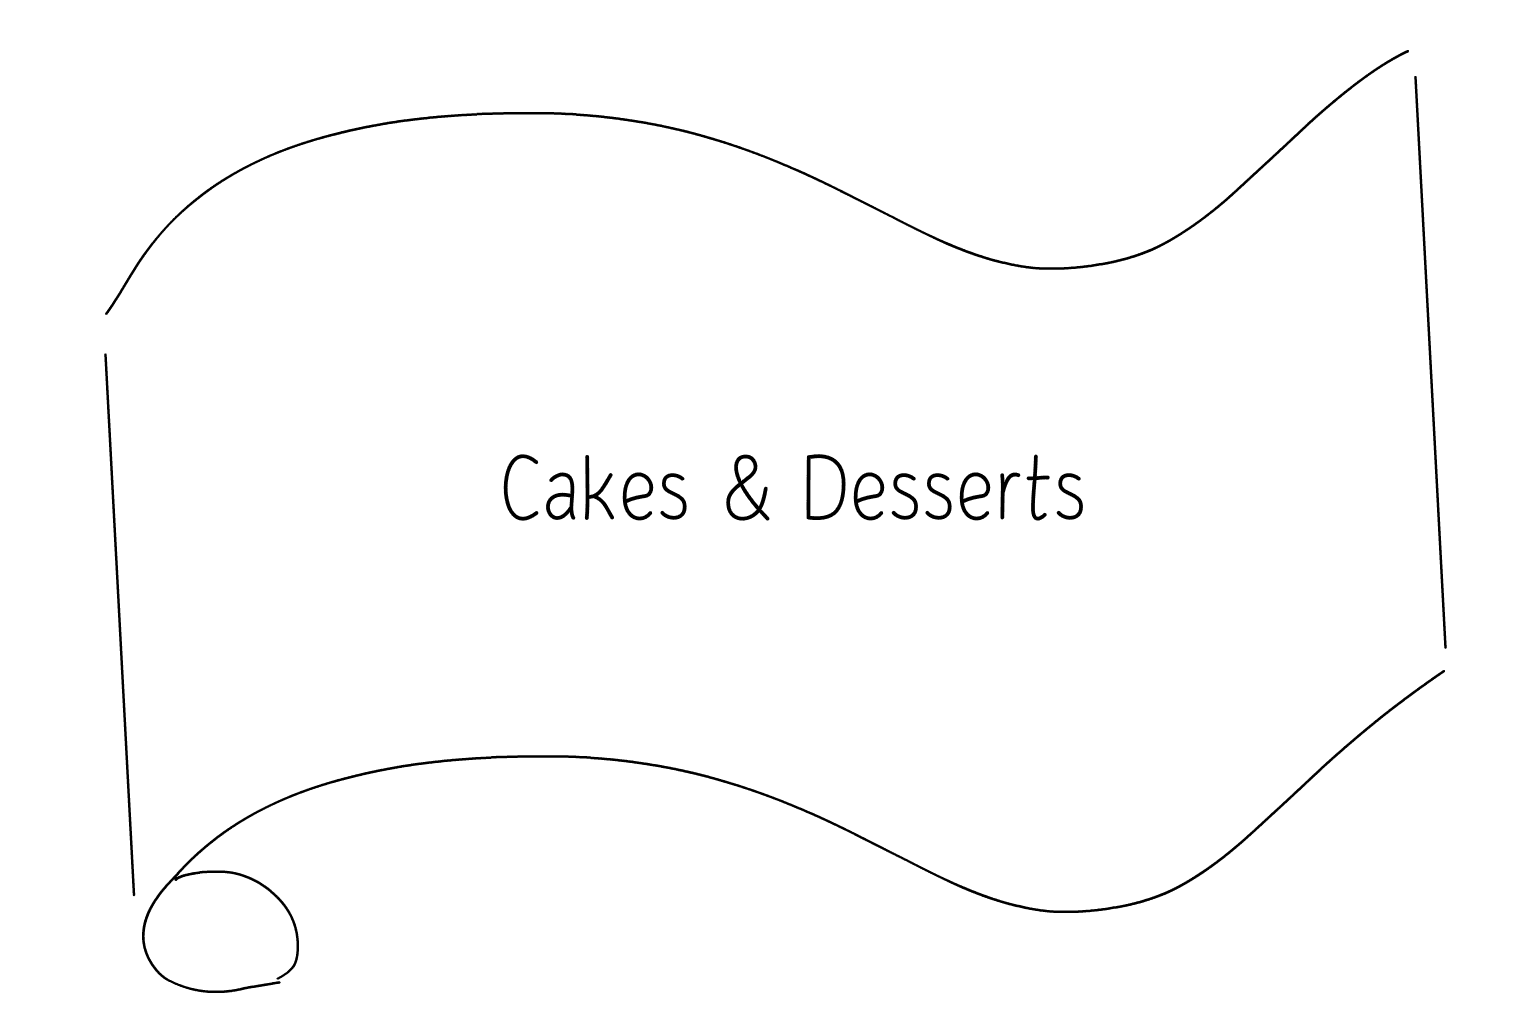 Иллюстрация свадебных тортов и десертов